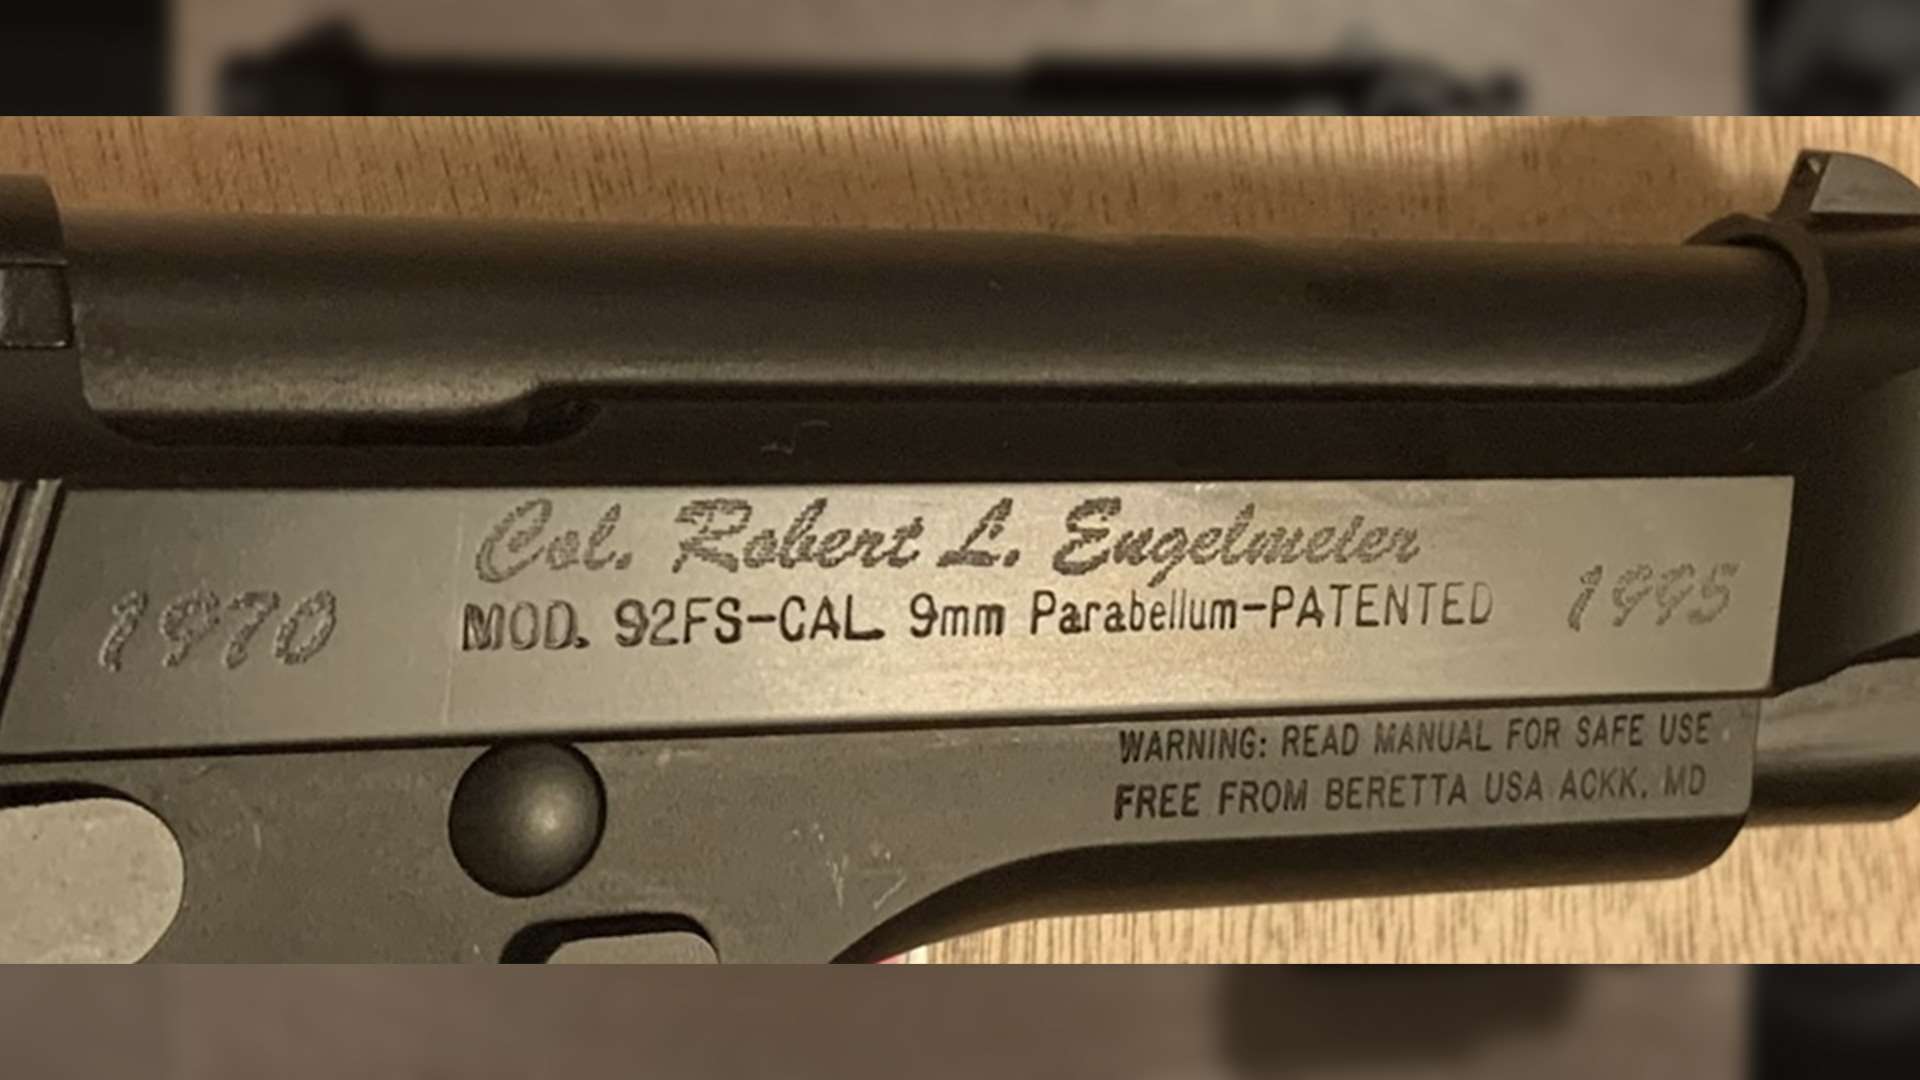 Beretta pistol engraving